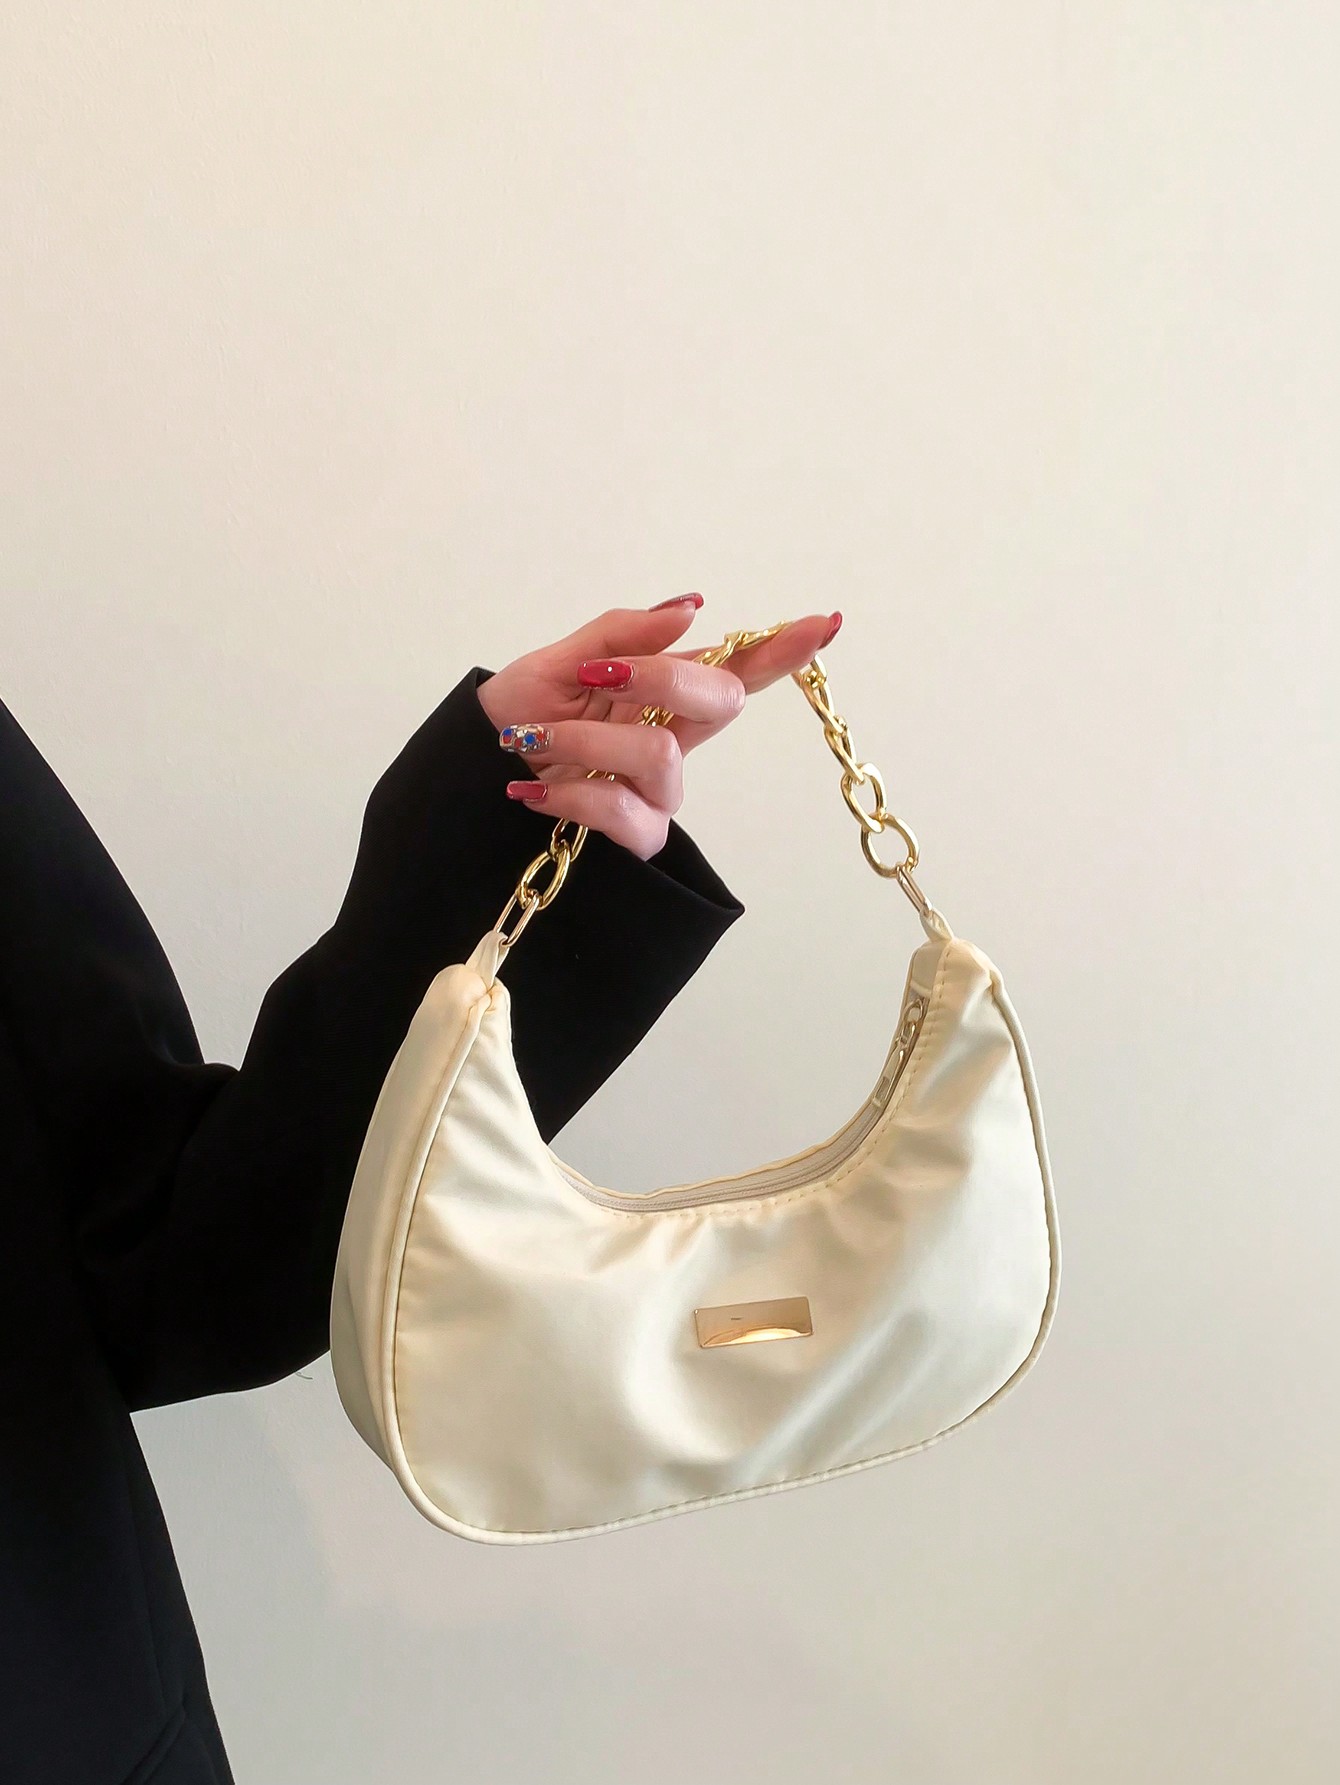 цена Распродажа «Черная пятница»! Модная однотонная женская многофункциональная сумка в форме полумесяца с металлической цепочкой, бежевый